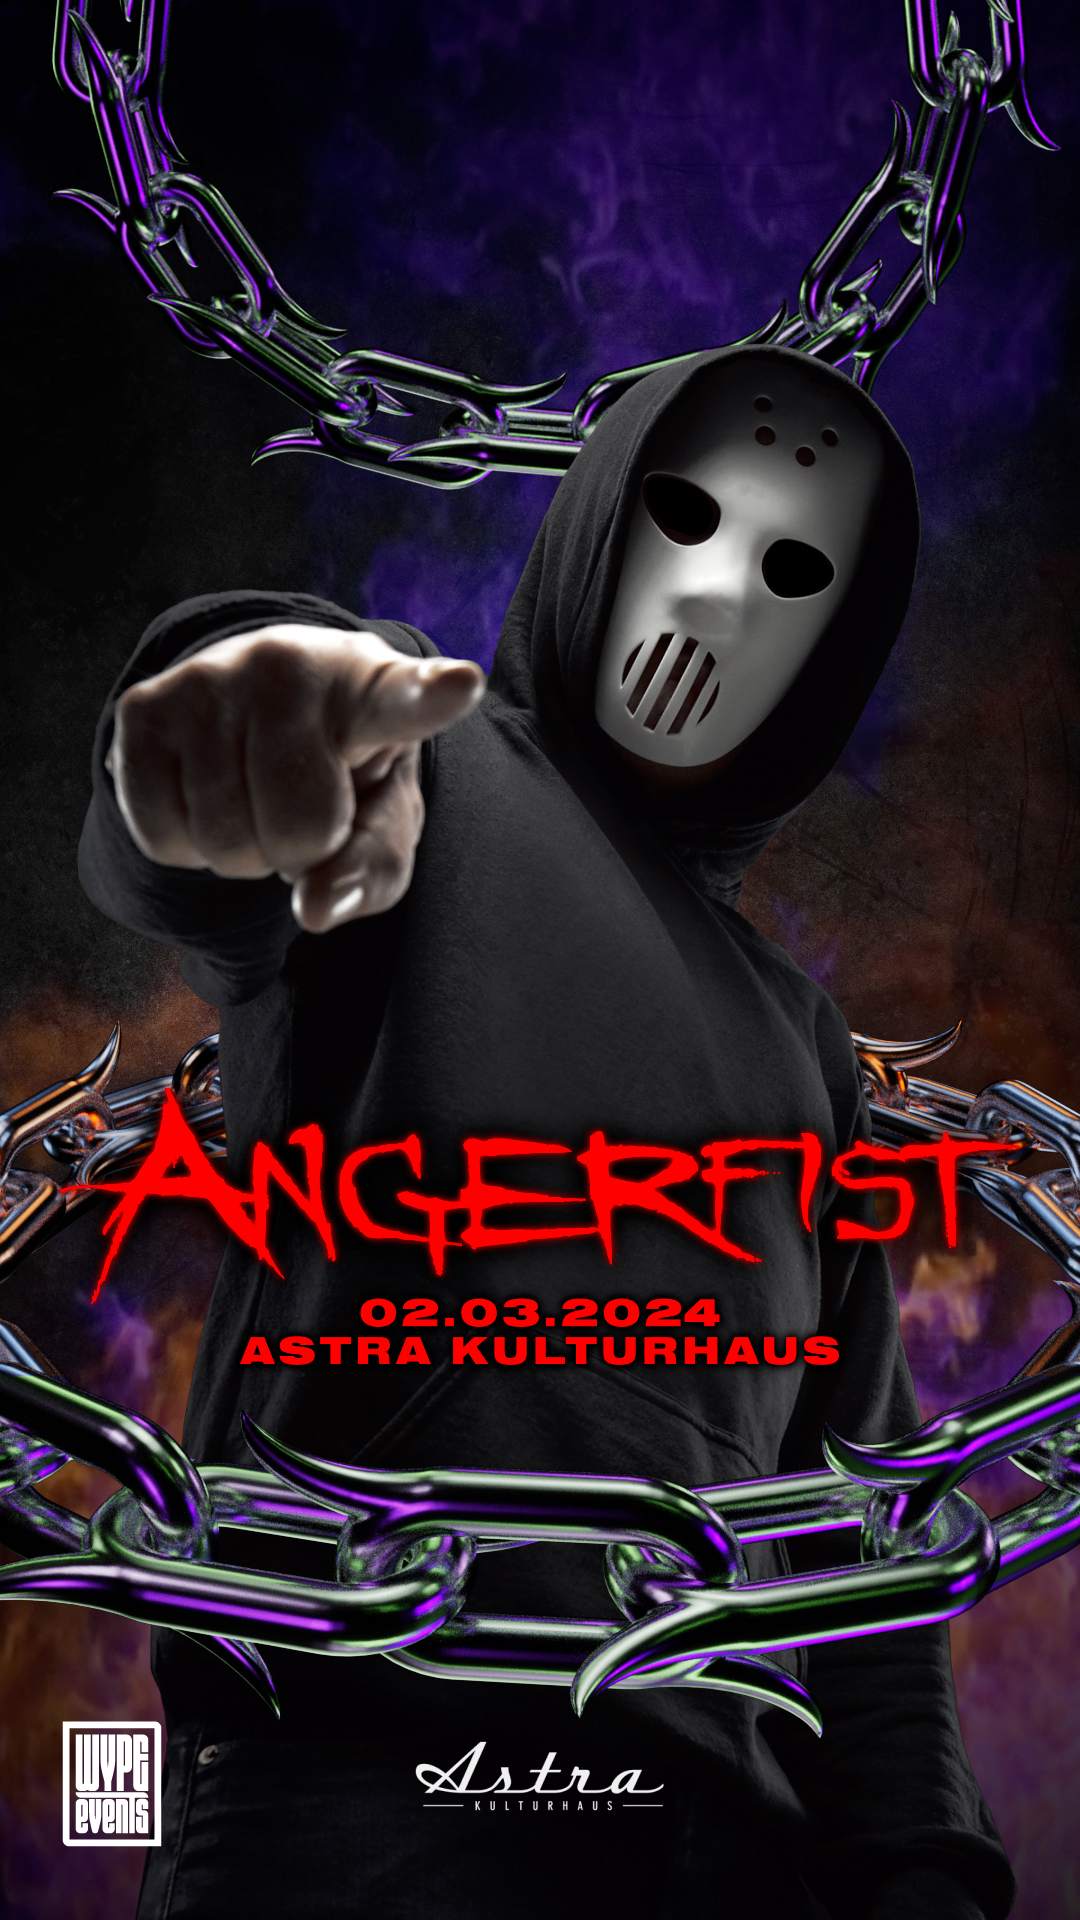 Angerfist Live at Astra Berlin - Página trasera